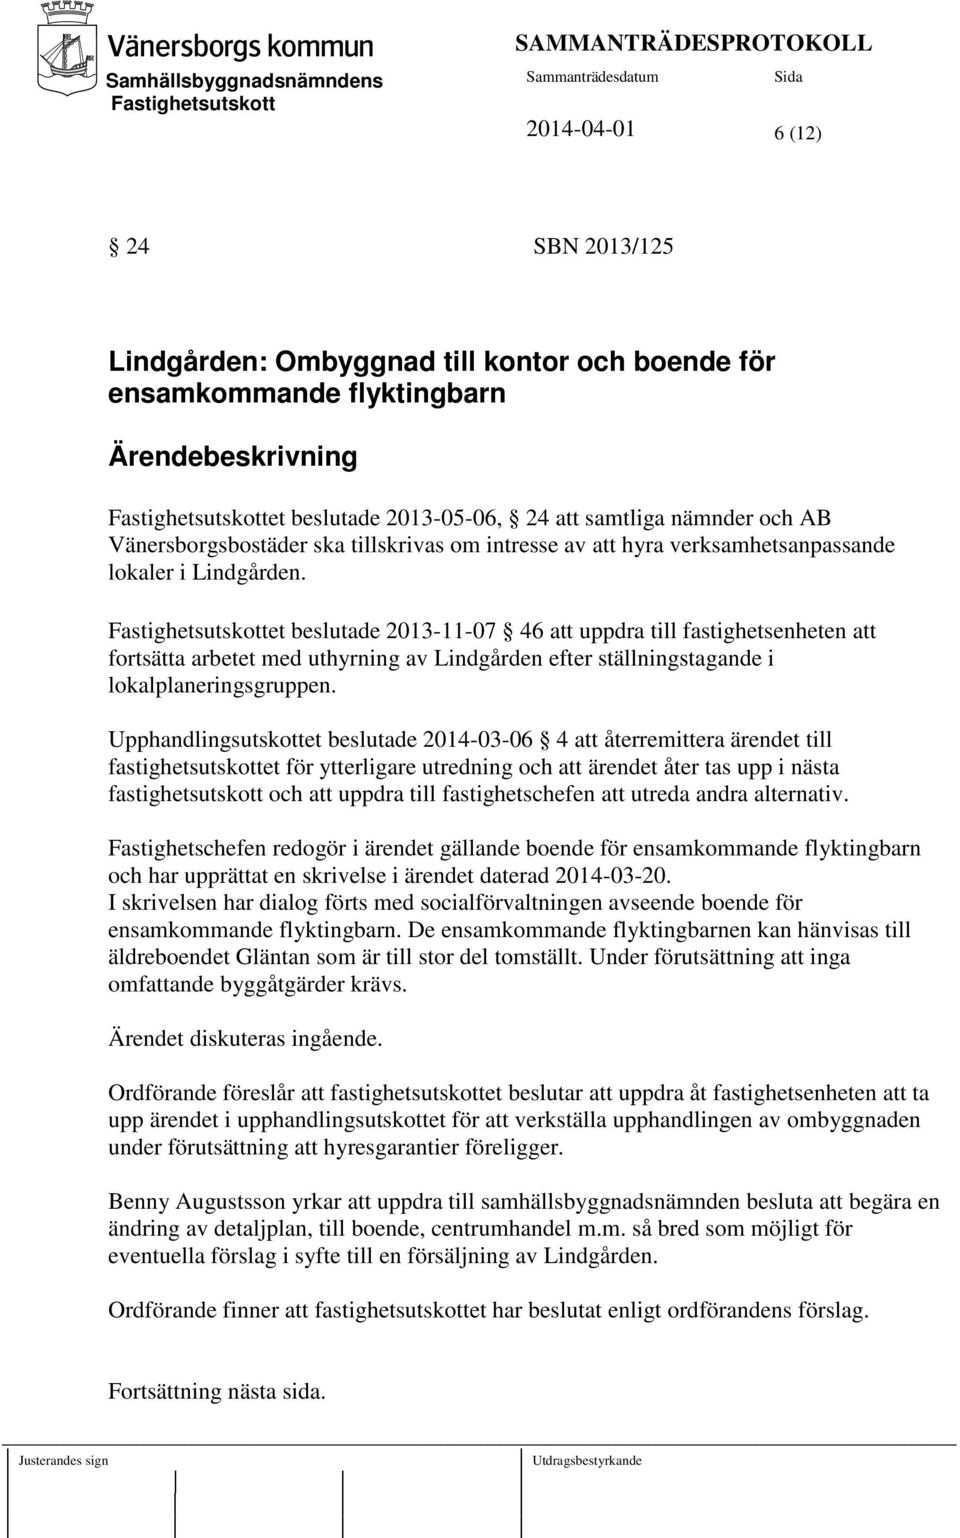 et beslutade 2013-11-07 46 att uppdra till fastighetsenheten att fortsätta arbetet med uthyrning av Lindgården efter ställningstagande i lokalplaneringsgruppen.